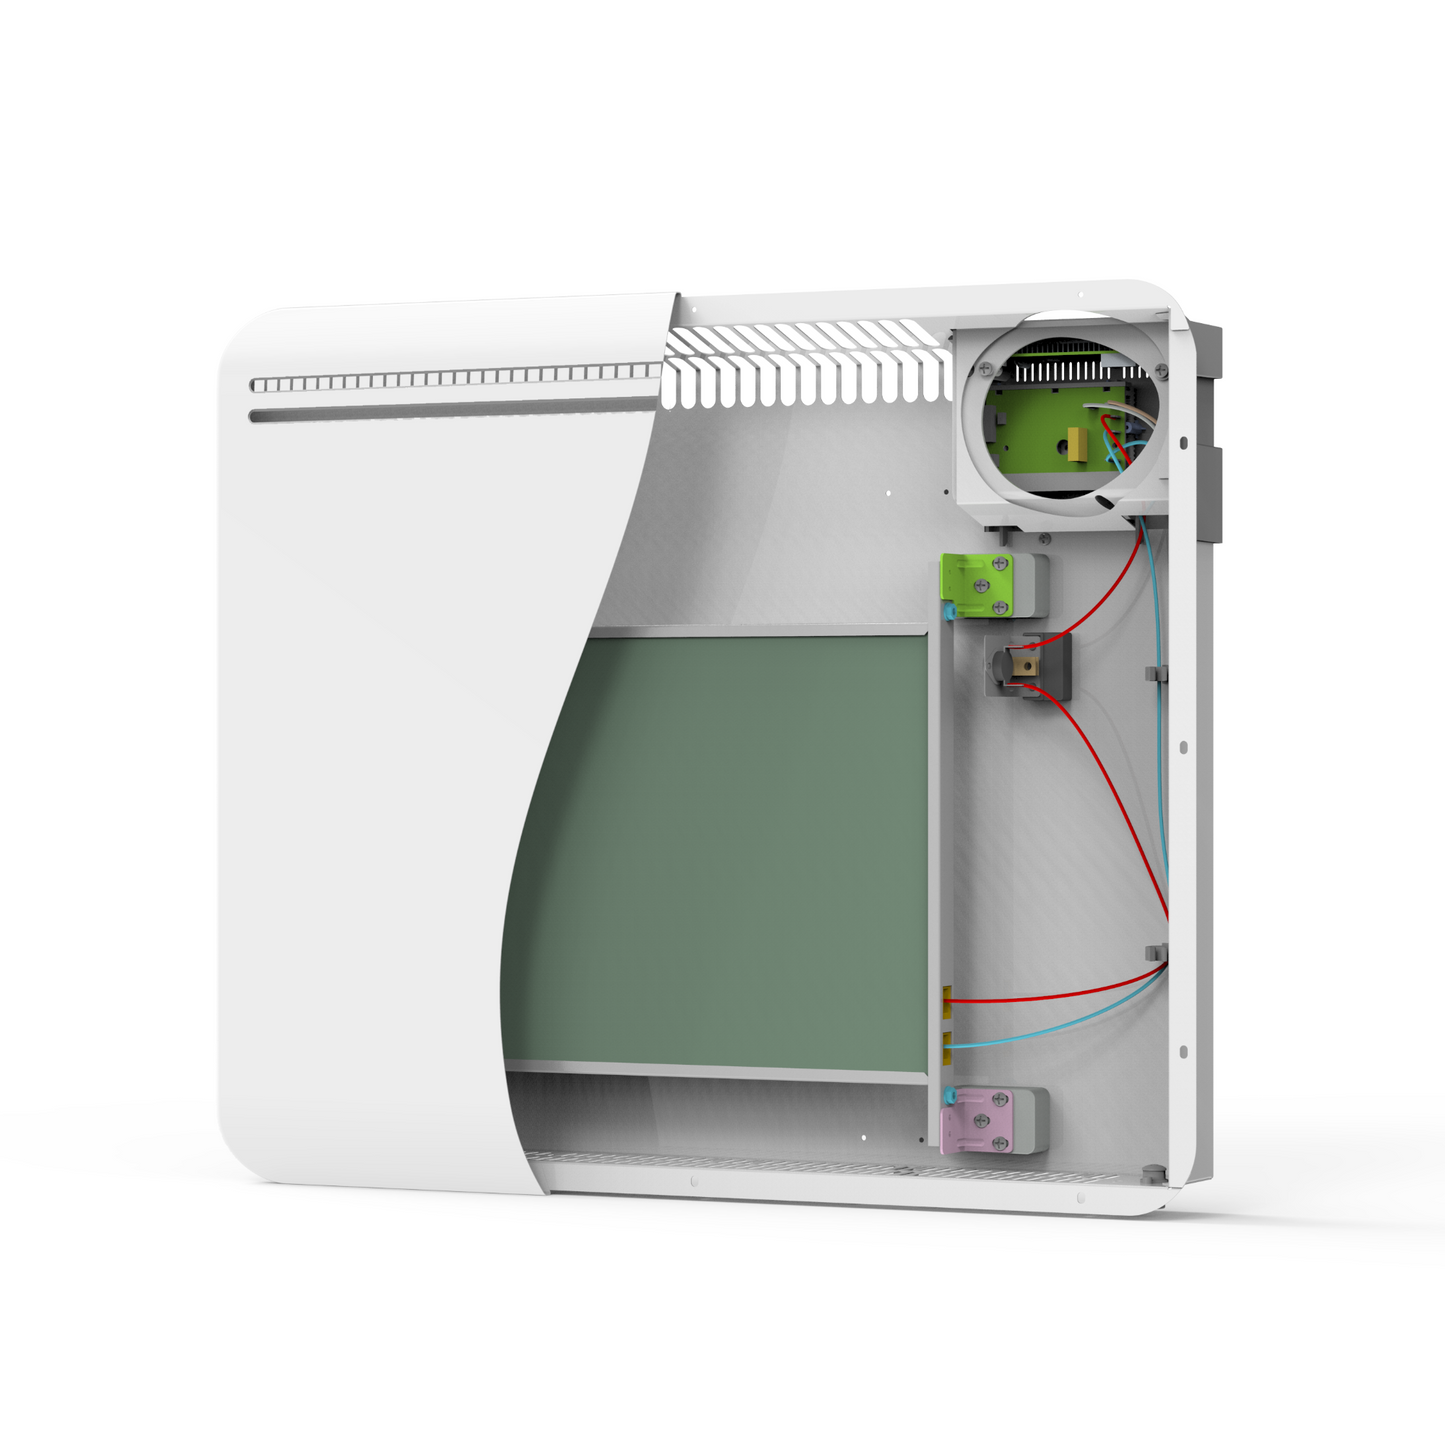 Radiateur électrique à inertie sèche CERAMIQUE écran LCD 1500W POWELL Norme NF - REDDECO.com